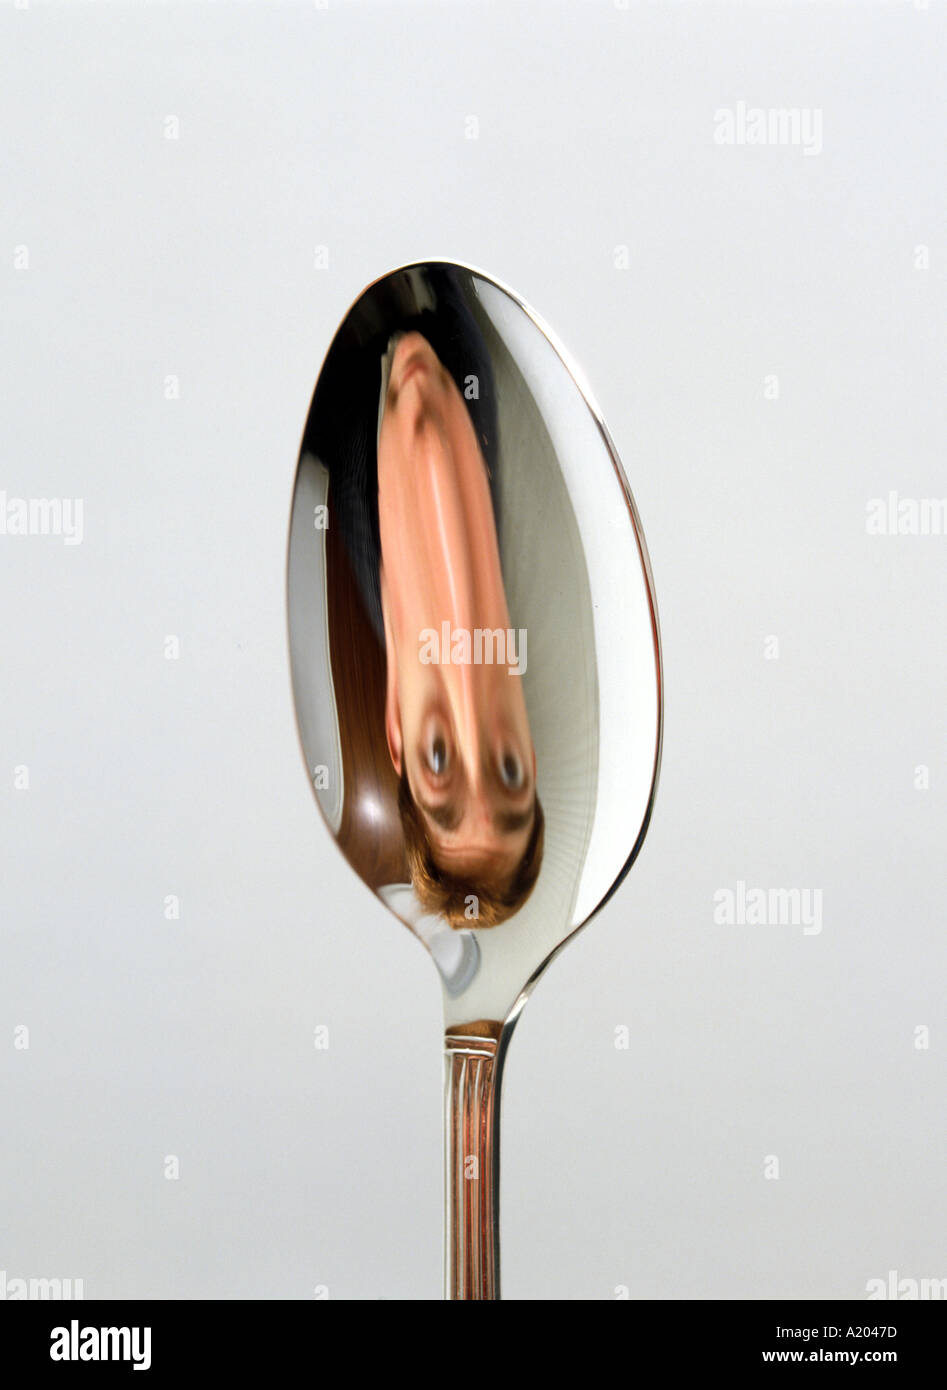 Spiegelbild in die konkave Seite der ein Löffel Bild invertiert auf den  Kopf gestellt Stockfotografie - Alamy